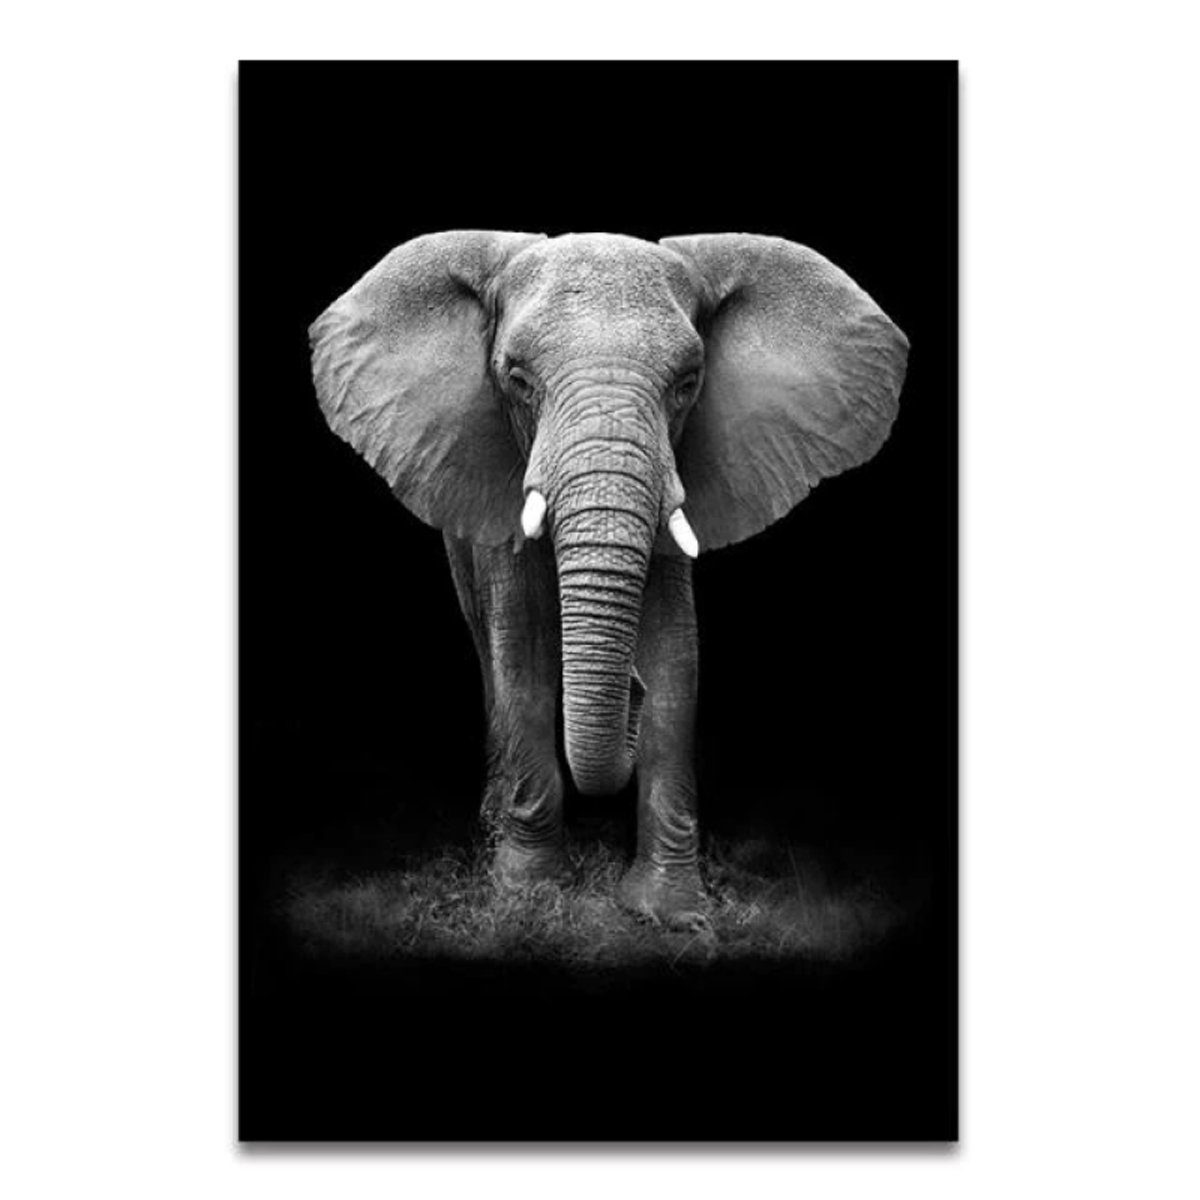 TPFLiving Kunstdruck (OHNE RAHMEN) Poster - Leinwand - Wandbild, Tierwelt Afrikas - Giraffe Elefant Zebra Nashorn Löwe Pferd - (12 Motive in 17 Größen zur Auswahl), Farben: Schwarz, Gold, Weiß - Größe: 13x18cm